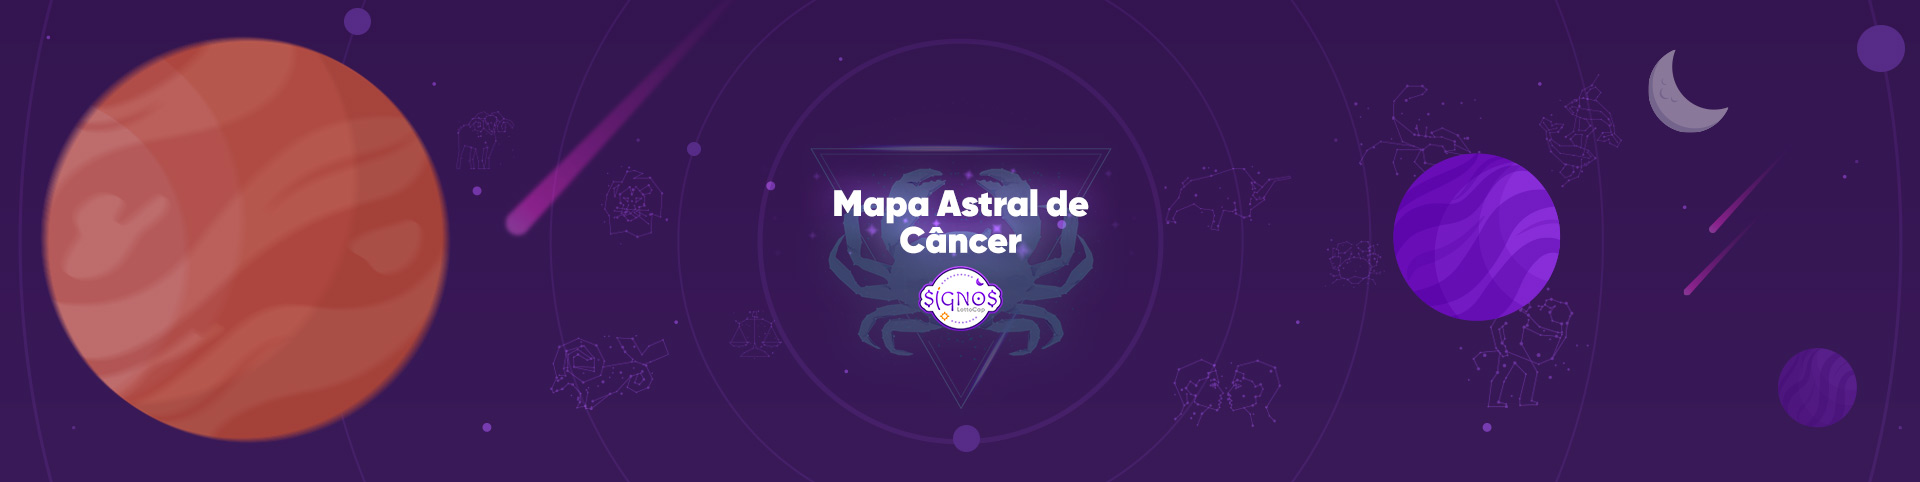 Mapa Astral de Câncer